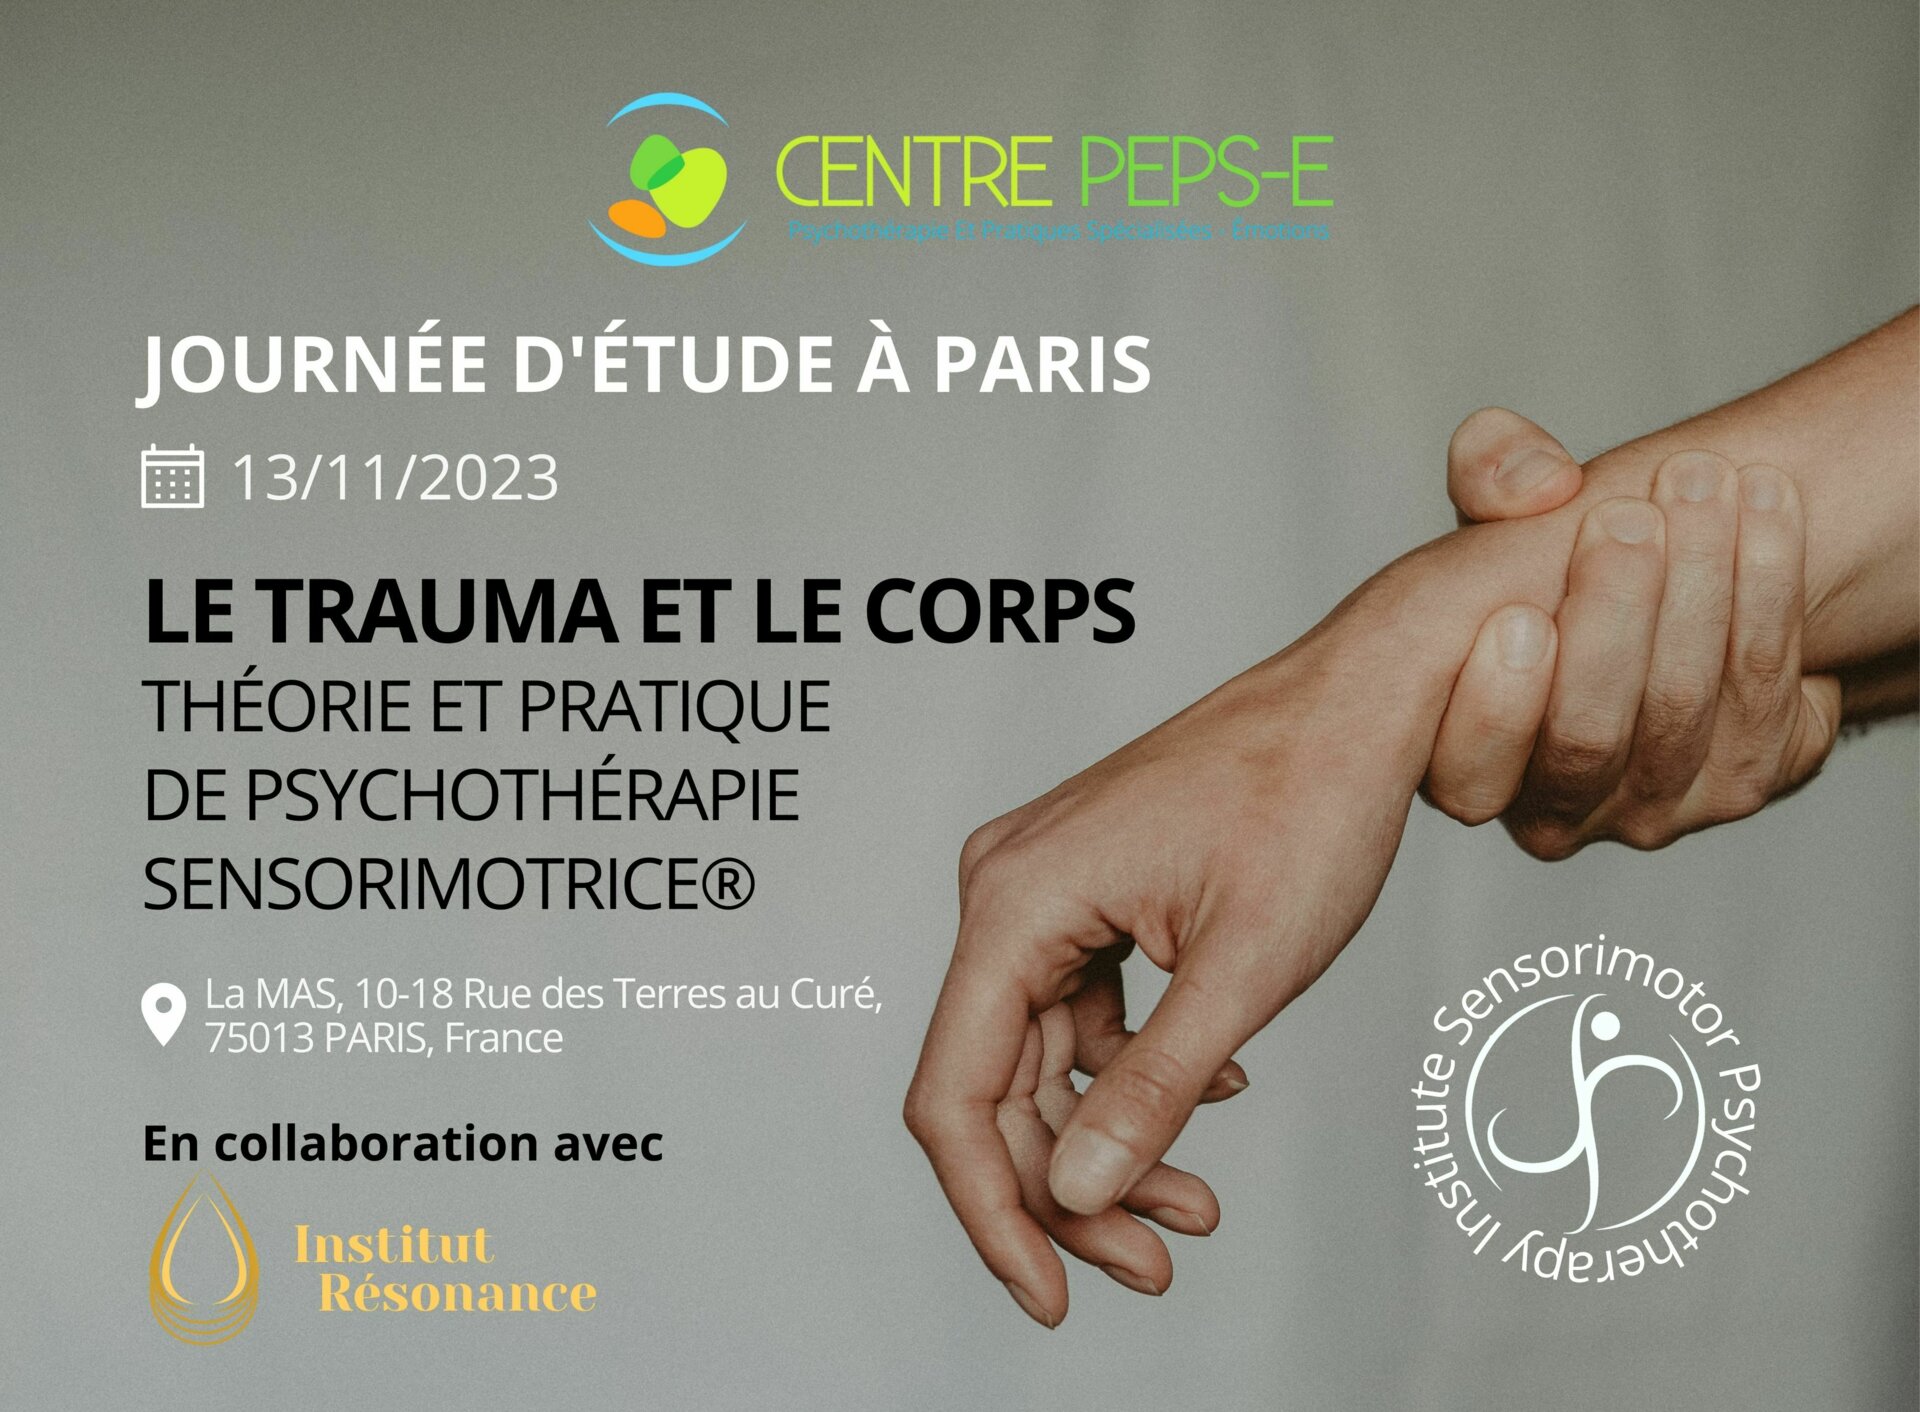 Journée d'étude (Paris) - Le trauma et le corps : introduction théorique et pratique à la psychothérapie sensorimotrice